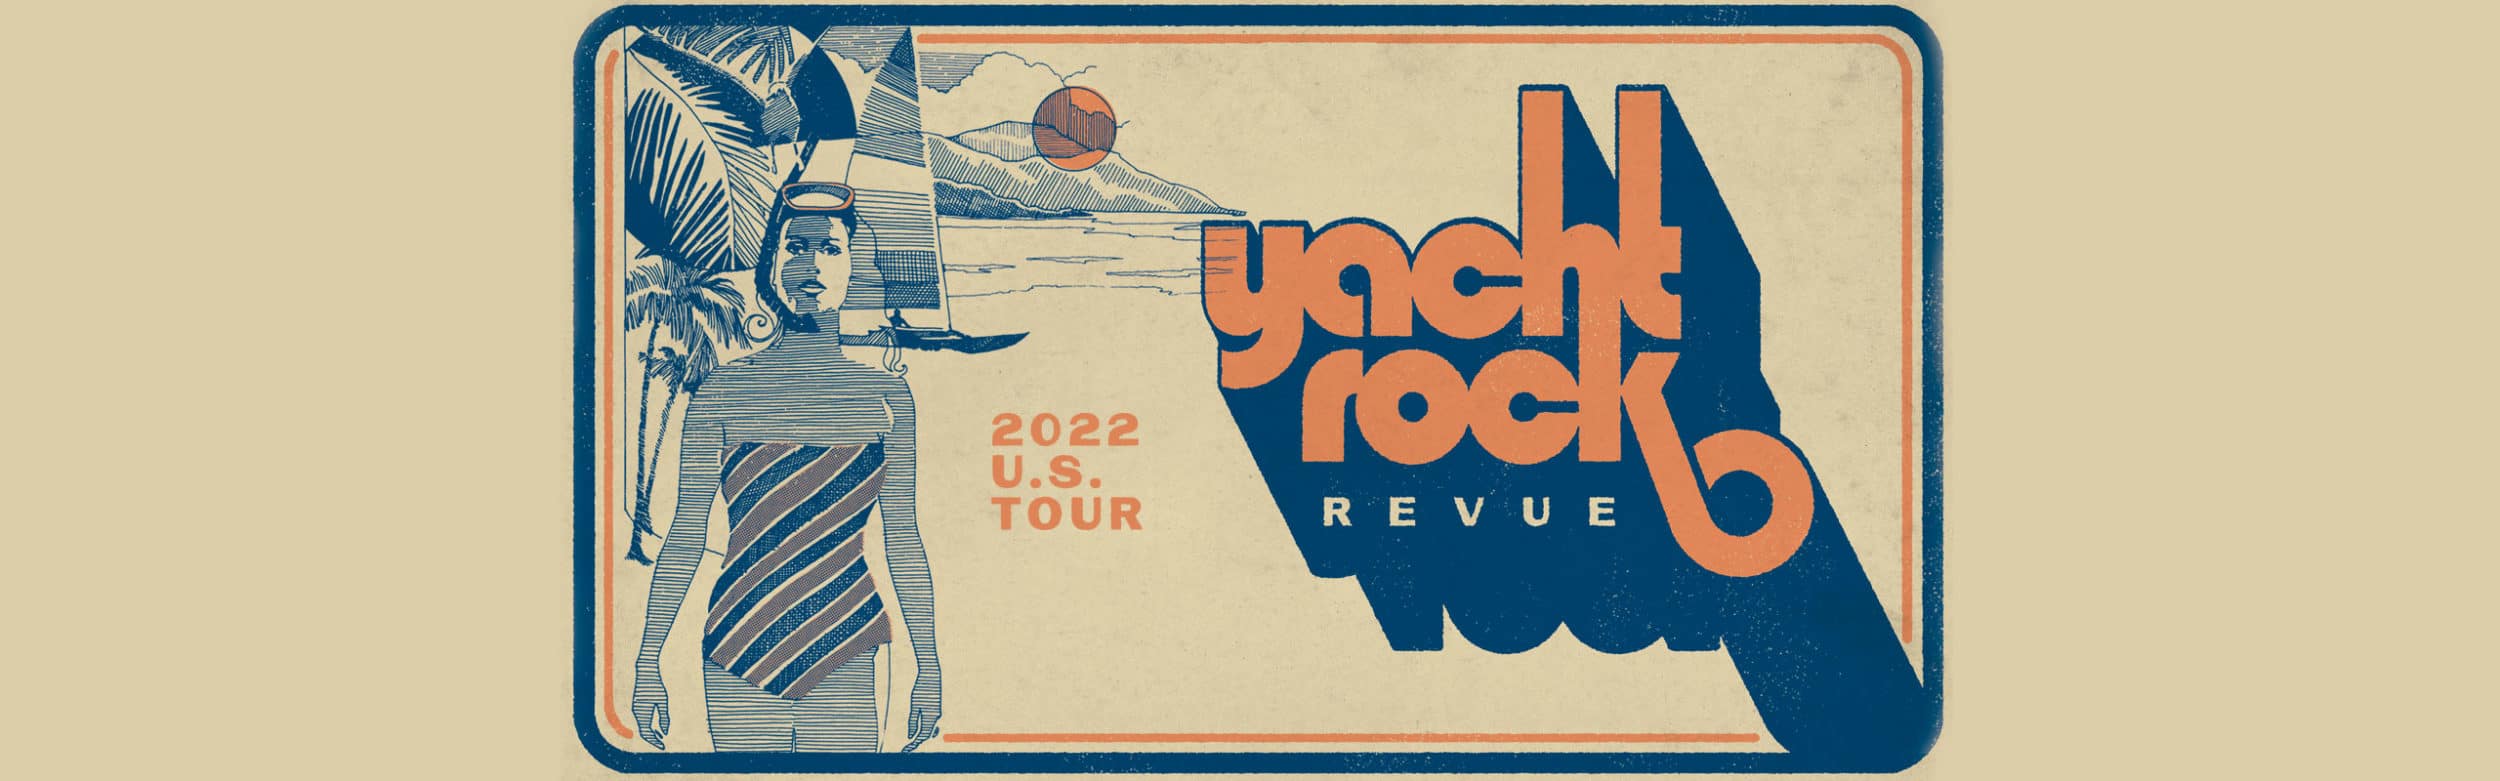 Yacht Rock Revue 2022 Tour